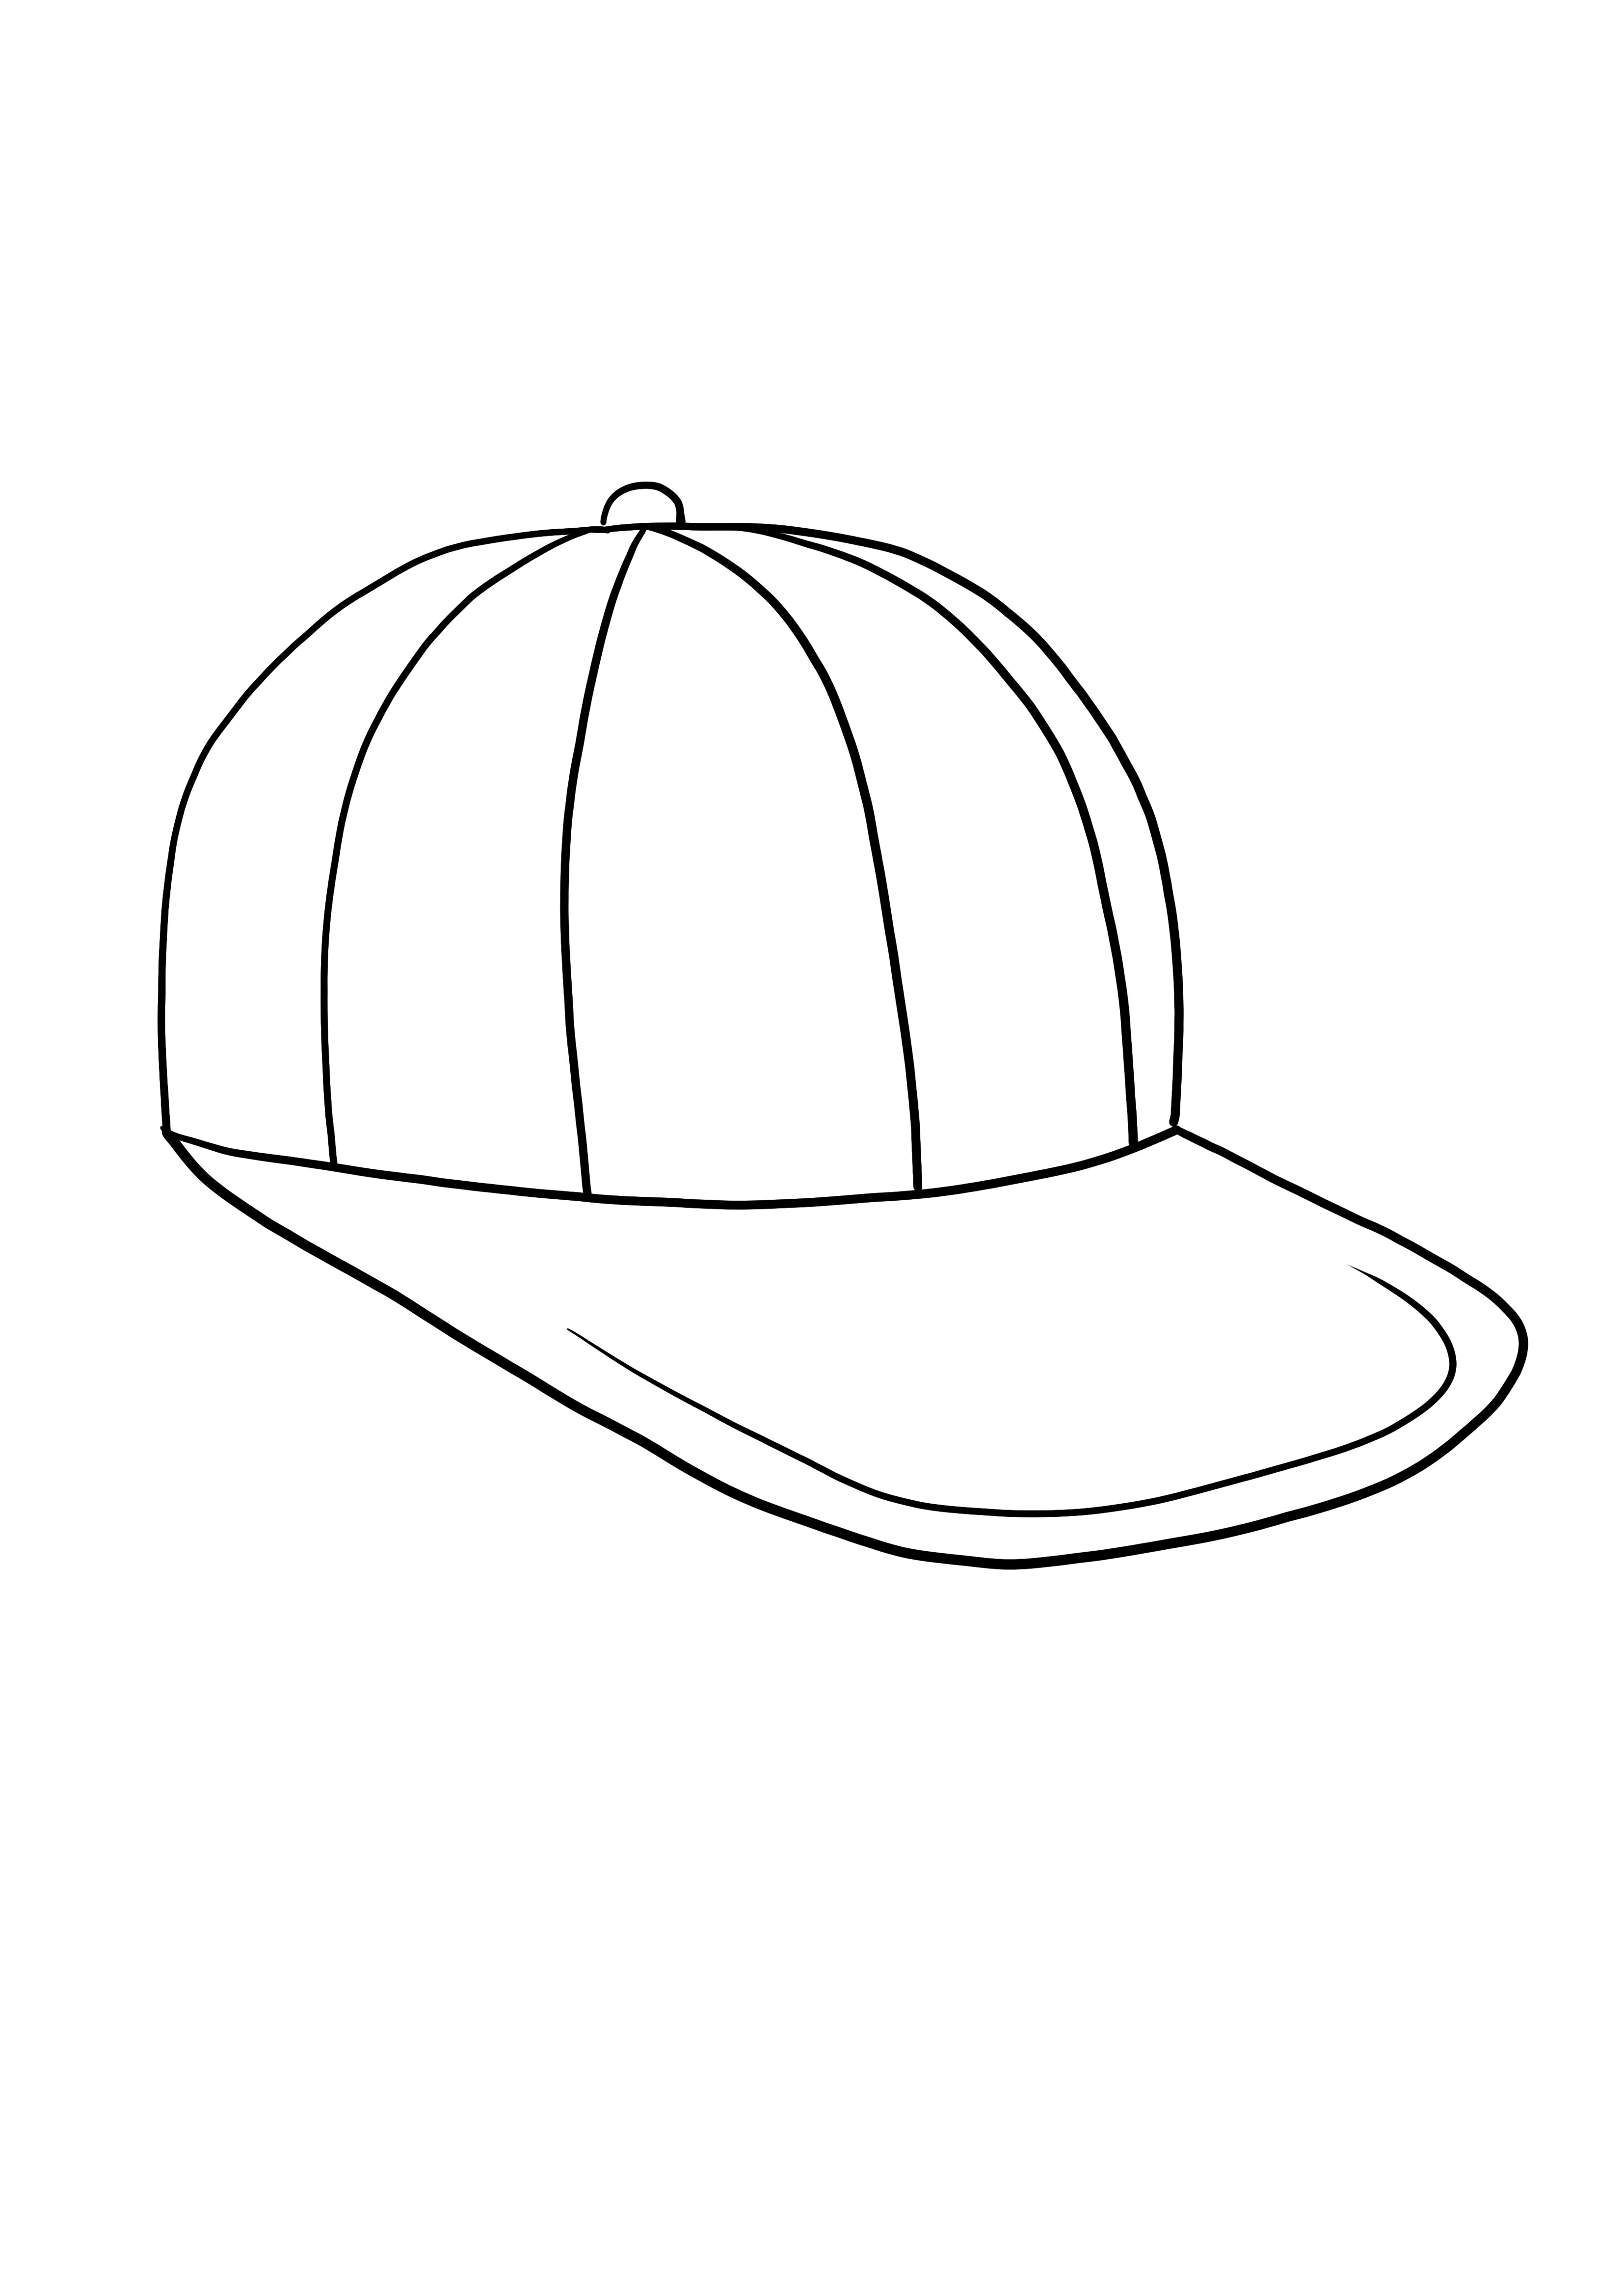 Immagine stampabile gratuita del berretto da baseball